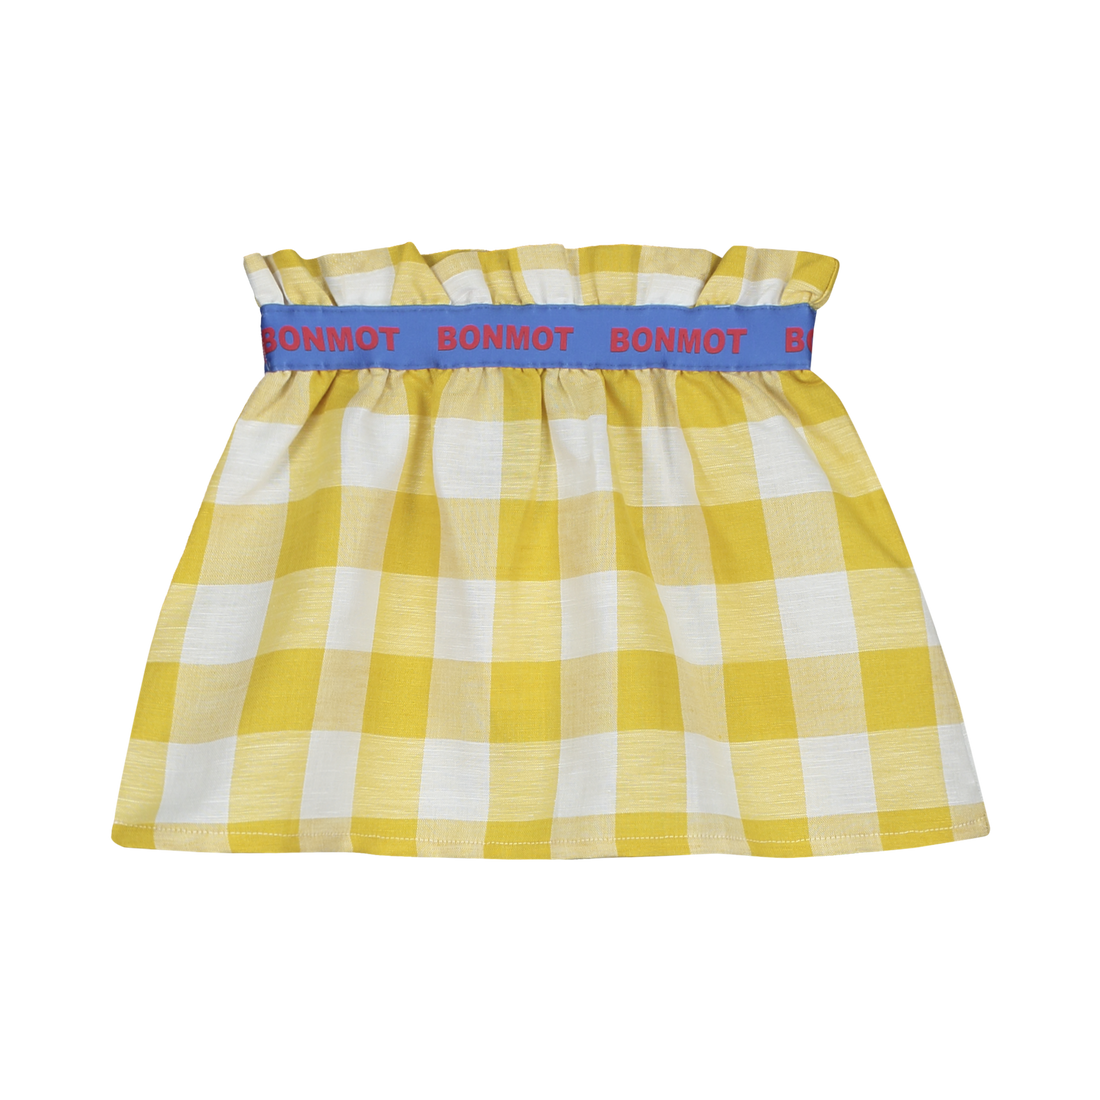 Mini skirt checks